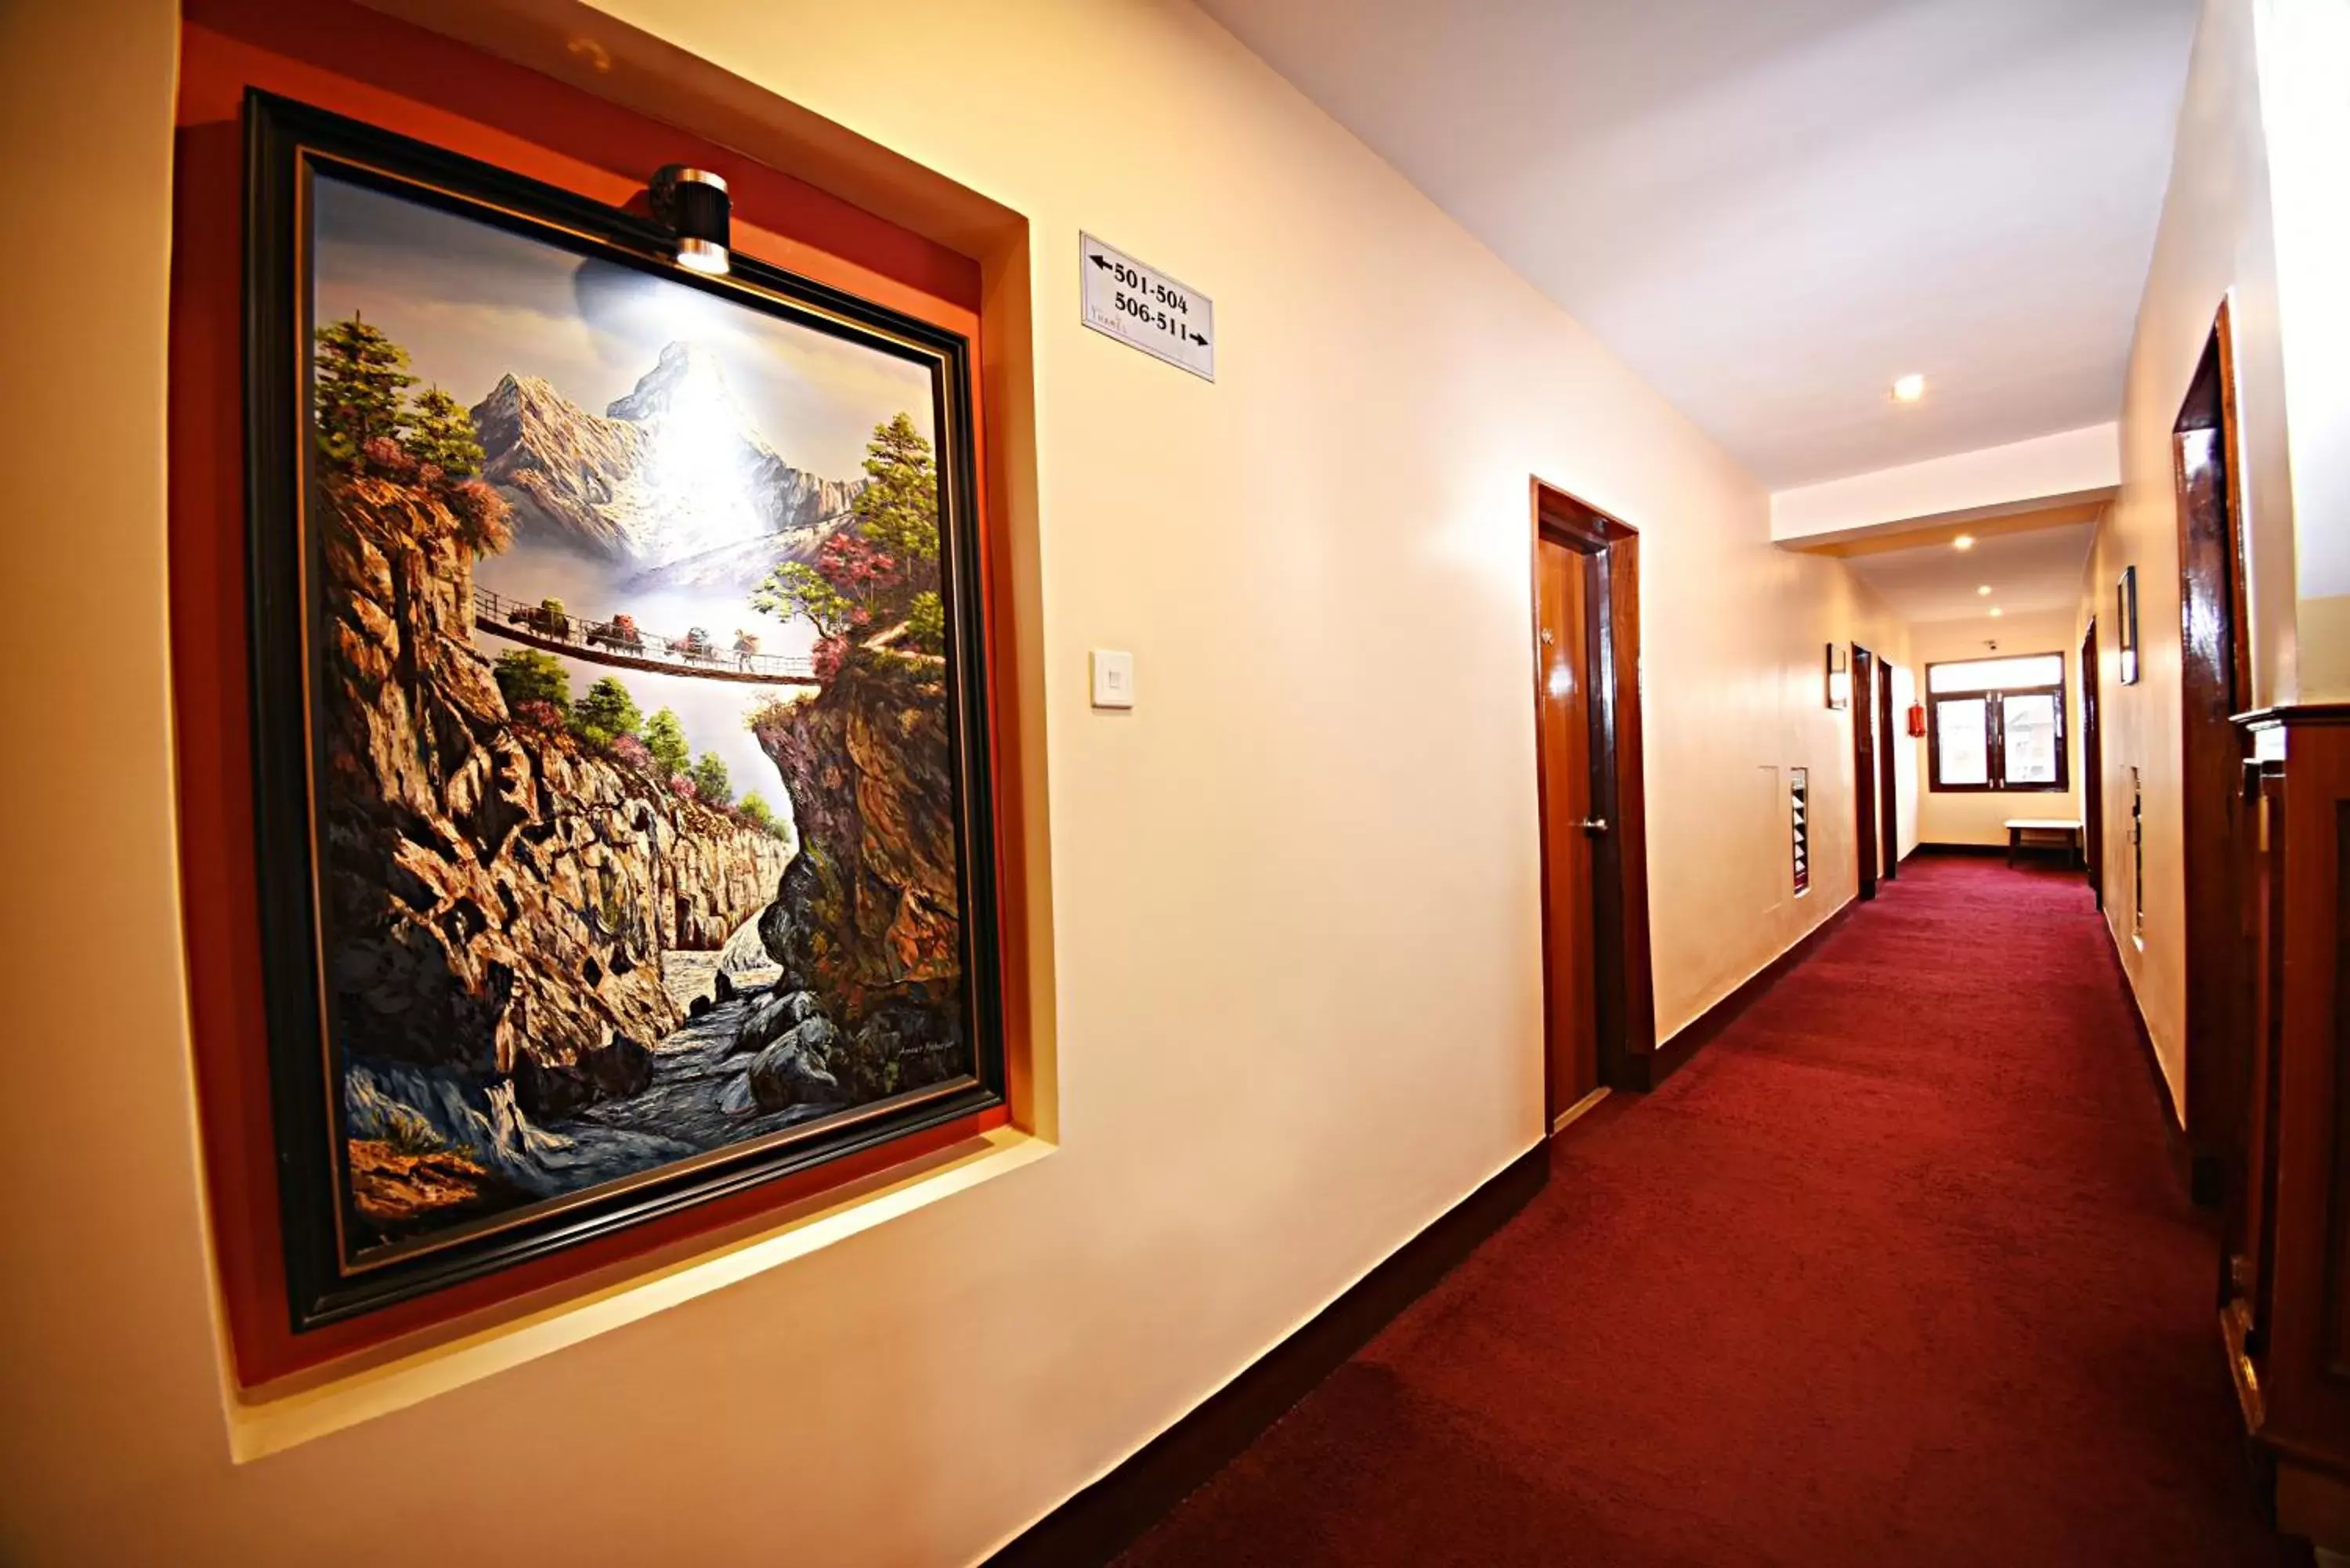 Lobby or reception in Hotel Thamel